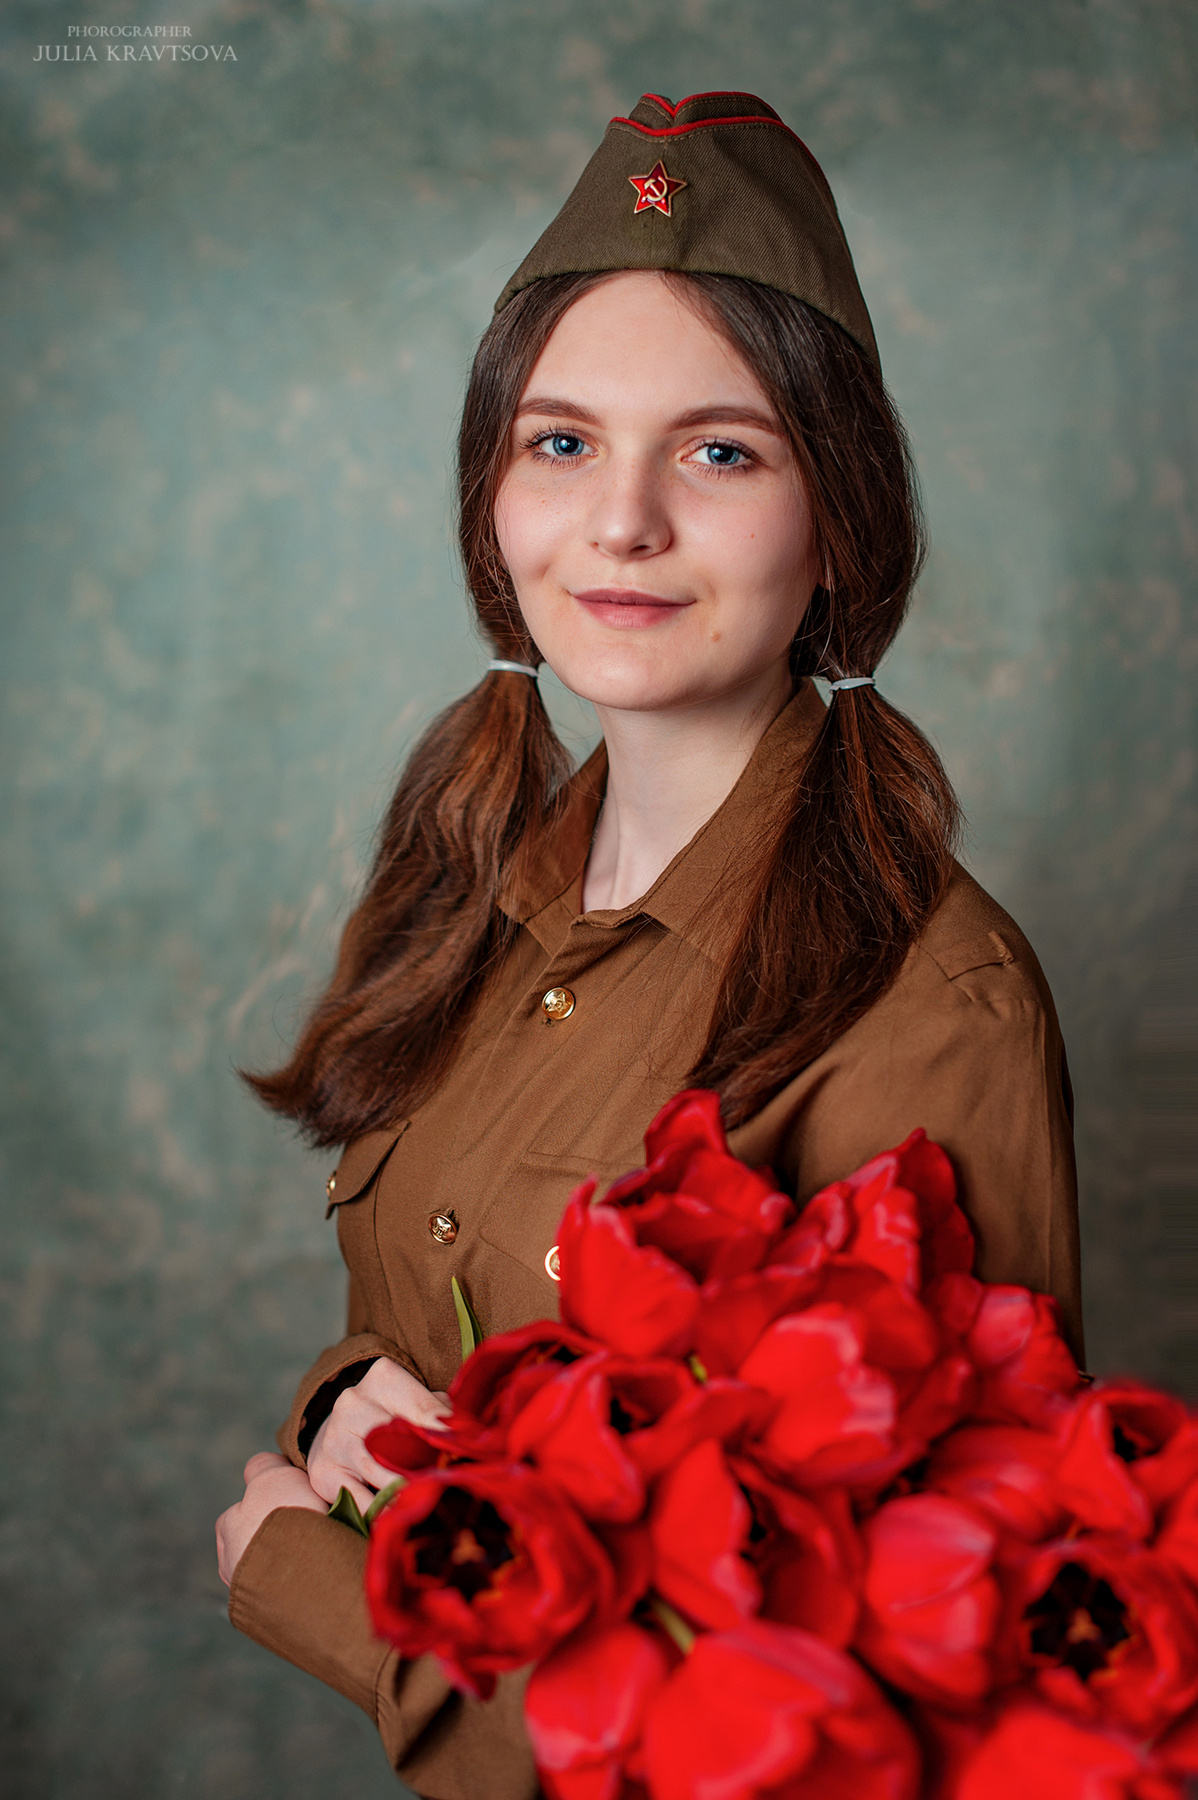 Тот самый май девушка портрет советский солдат тюльпаны воин